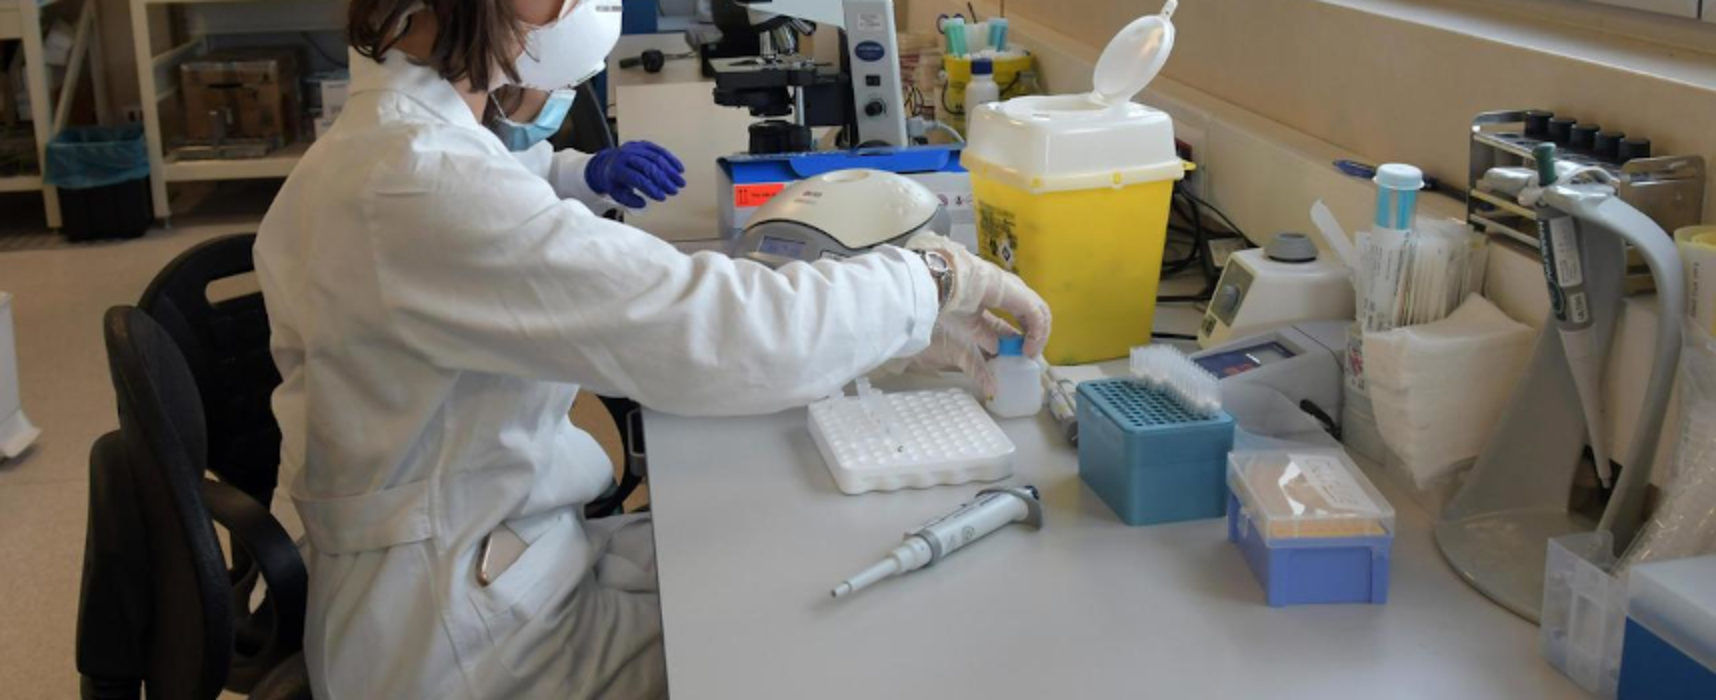 Coronavirus: oltre 2300 nuovi casi oggi in Puglia, ancora in aumento il numero dei contagi